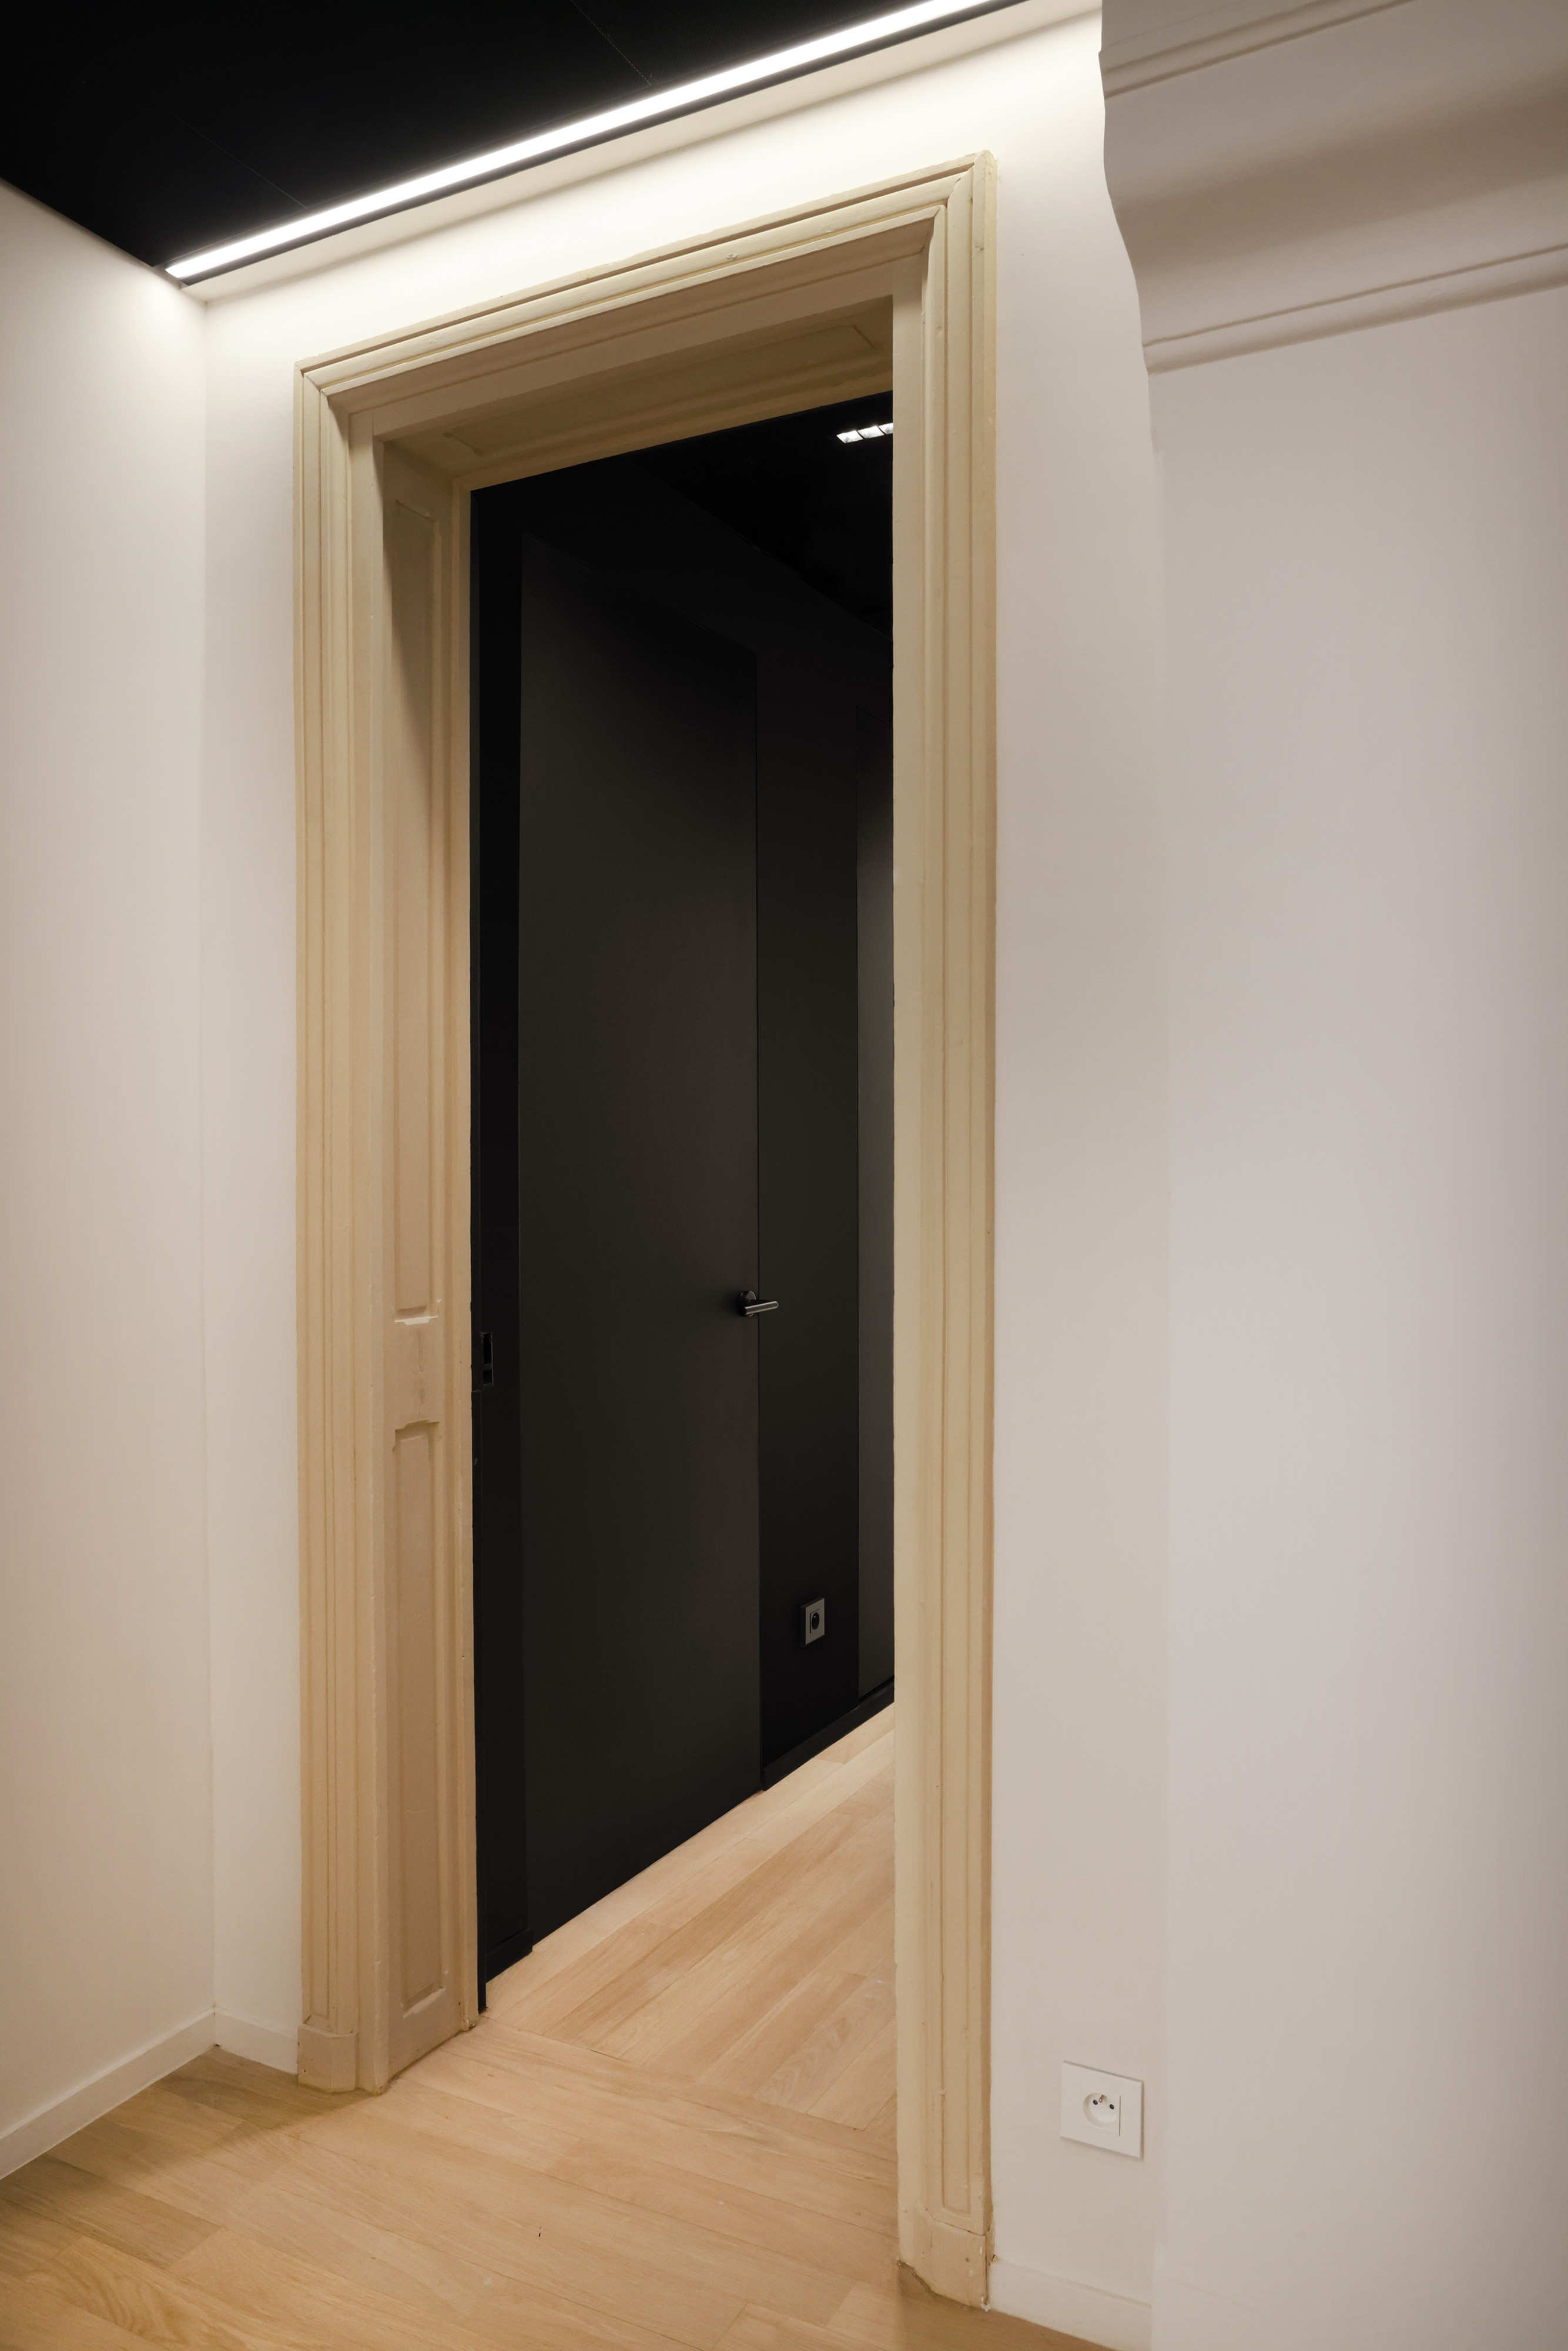 Zwarte deuren geïnstalleerd met onzichtbare deurkaders uit het invisidoor gamma van ARLU. De deur ligt gelijk met de wand en is nagenoeg onzichtbaar.